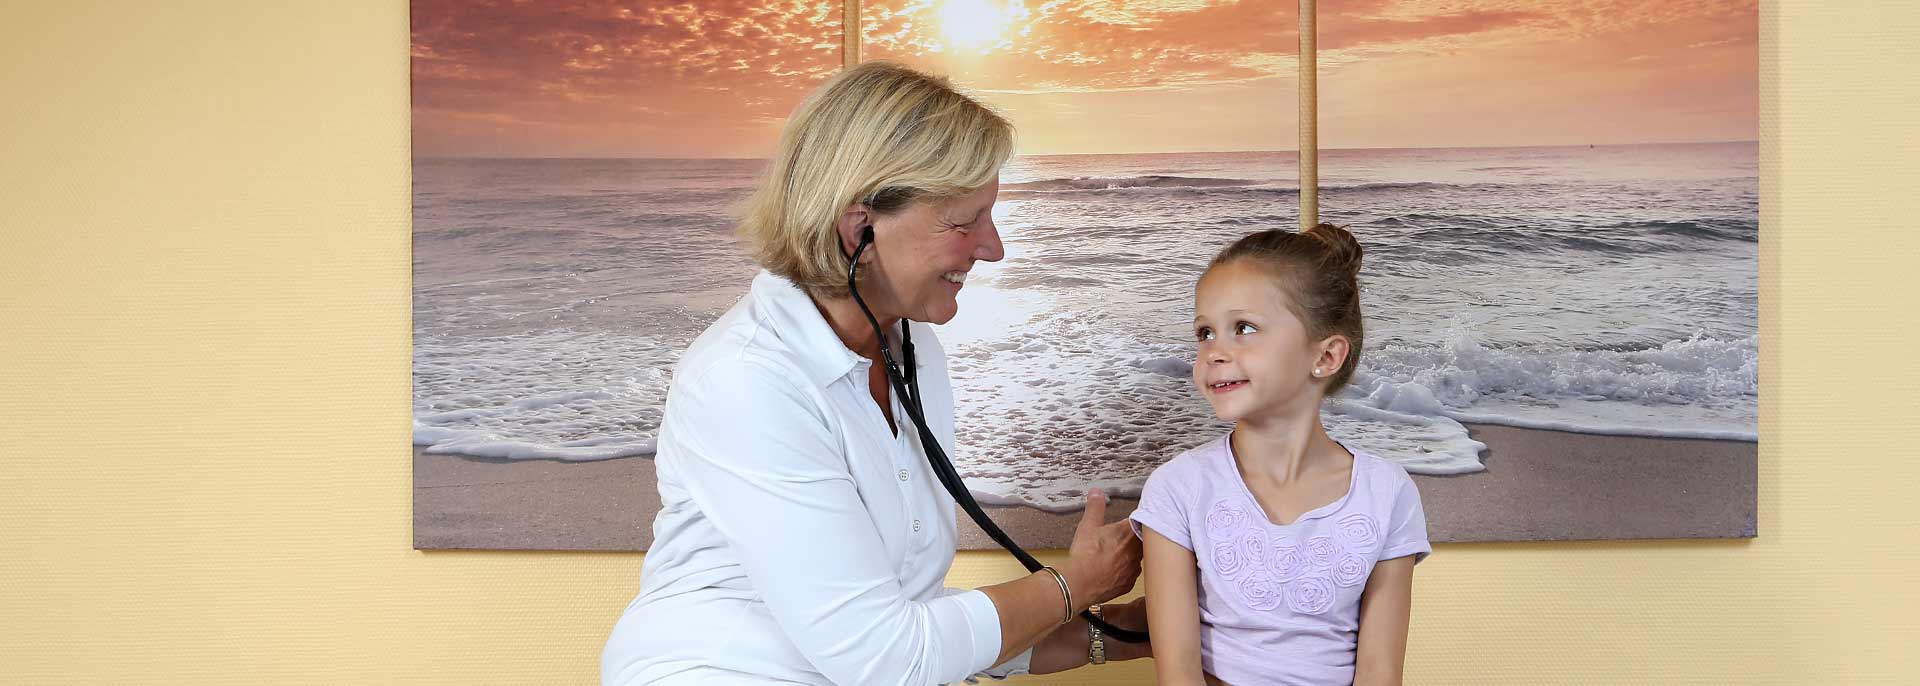 Ärztin hört Kind mit Stethoskop ab 